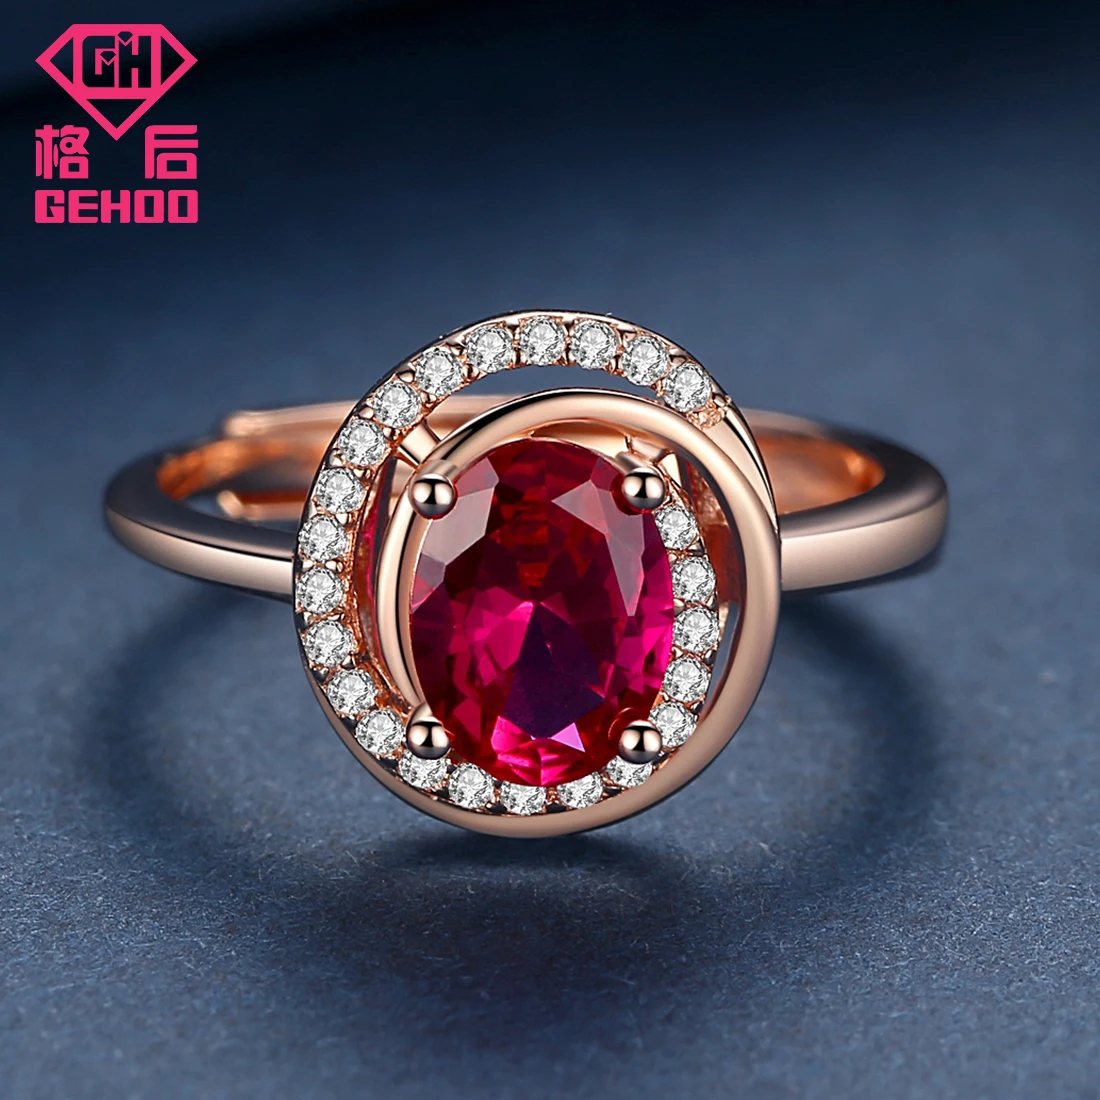 GEHOO розовый кварц ювелирный набор проложили CZ подвеска уникального дизайна 925 пробы Серебряный женский шарм ожерелье и серьги-гвоздики и кольцо